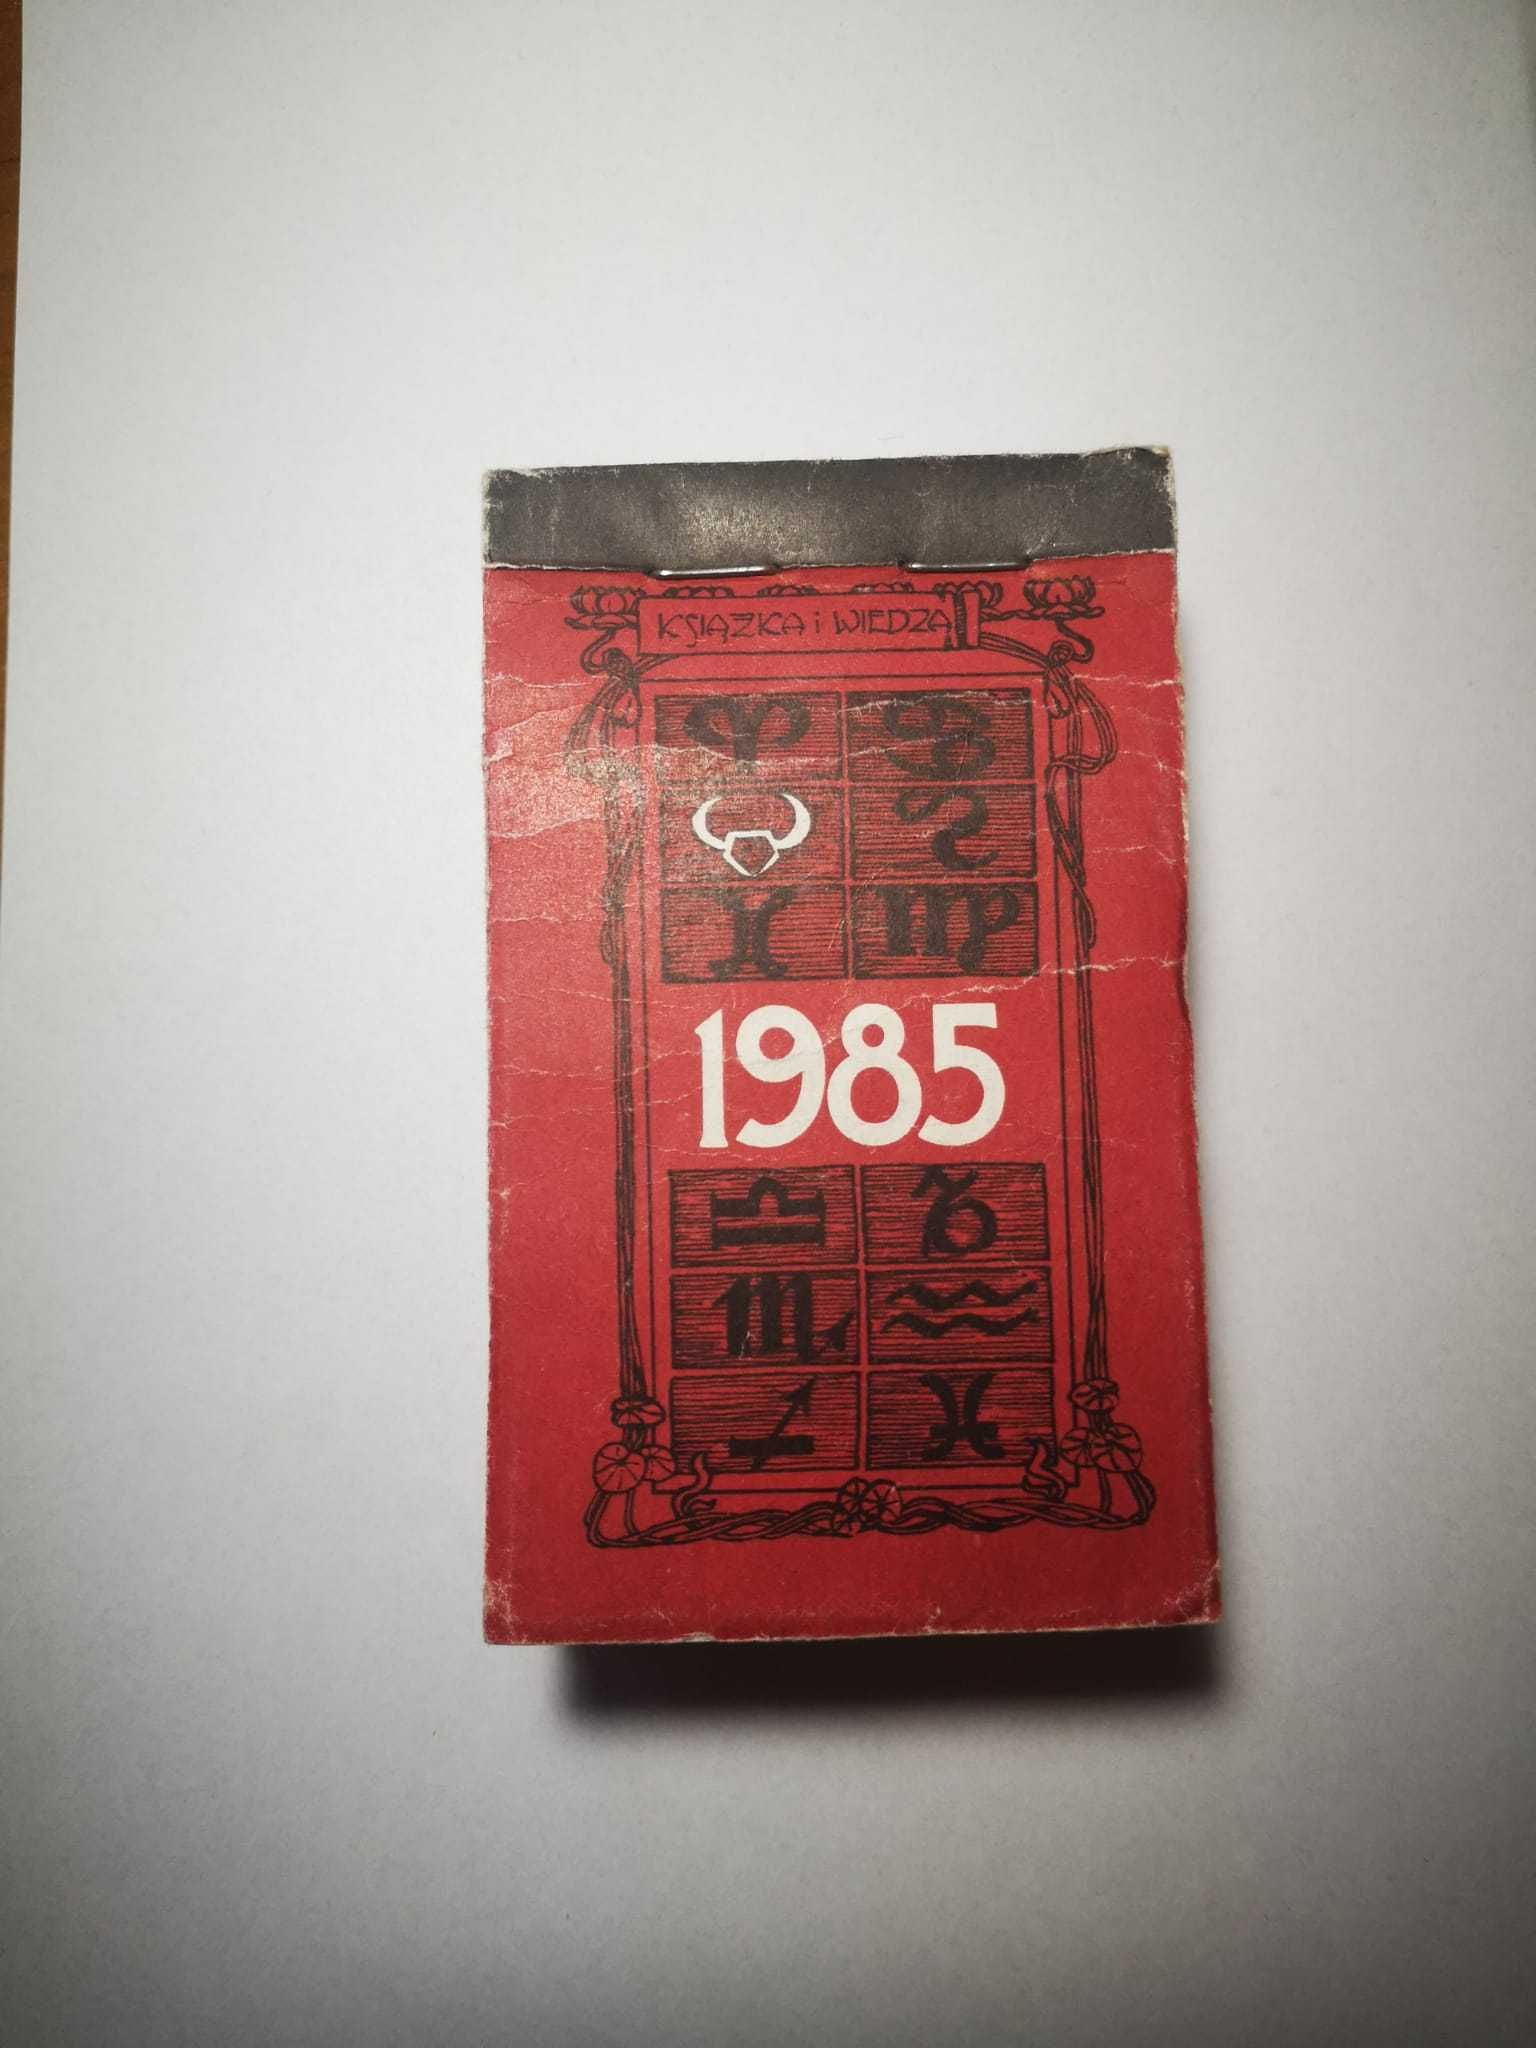 Kalendarz zdzierak 1985 kompletny kalendarz listkowy